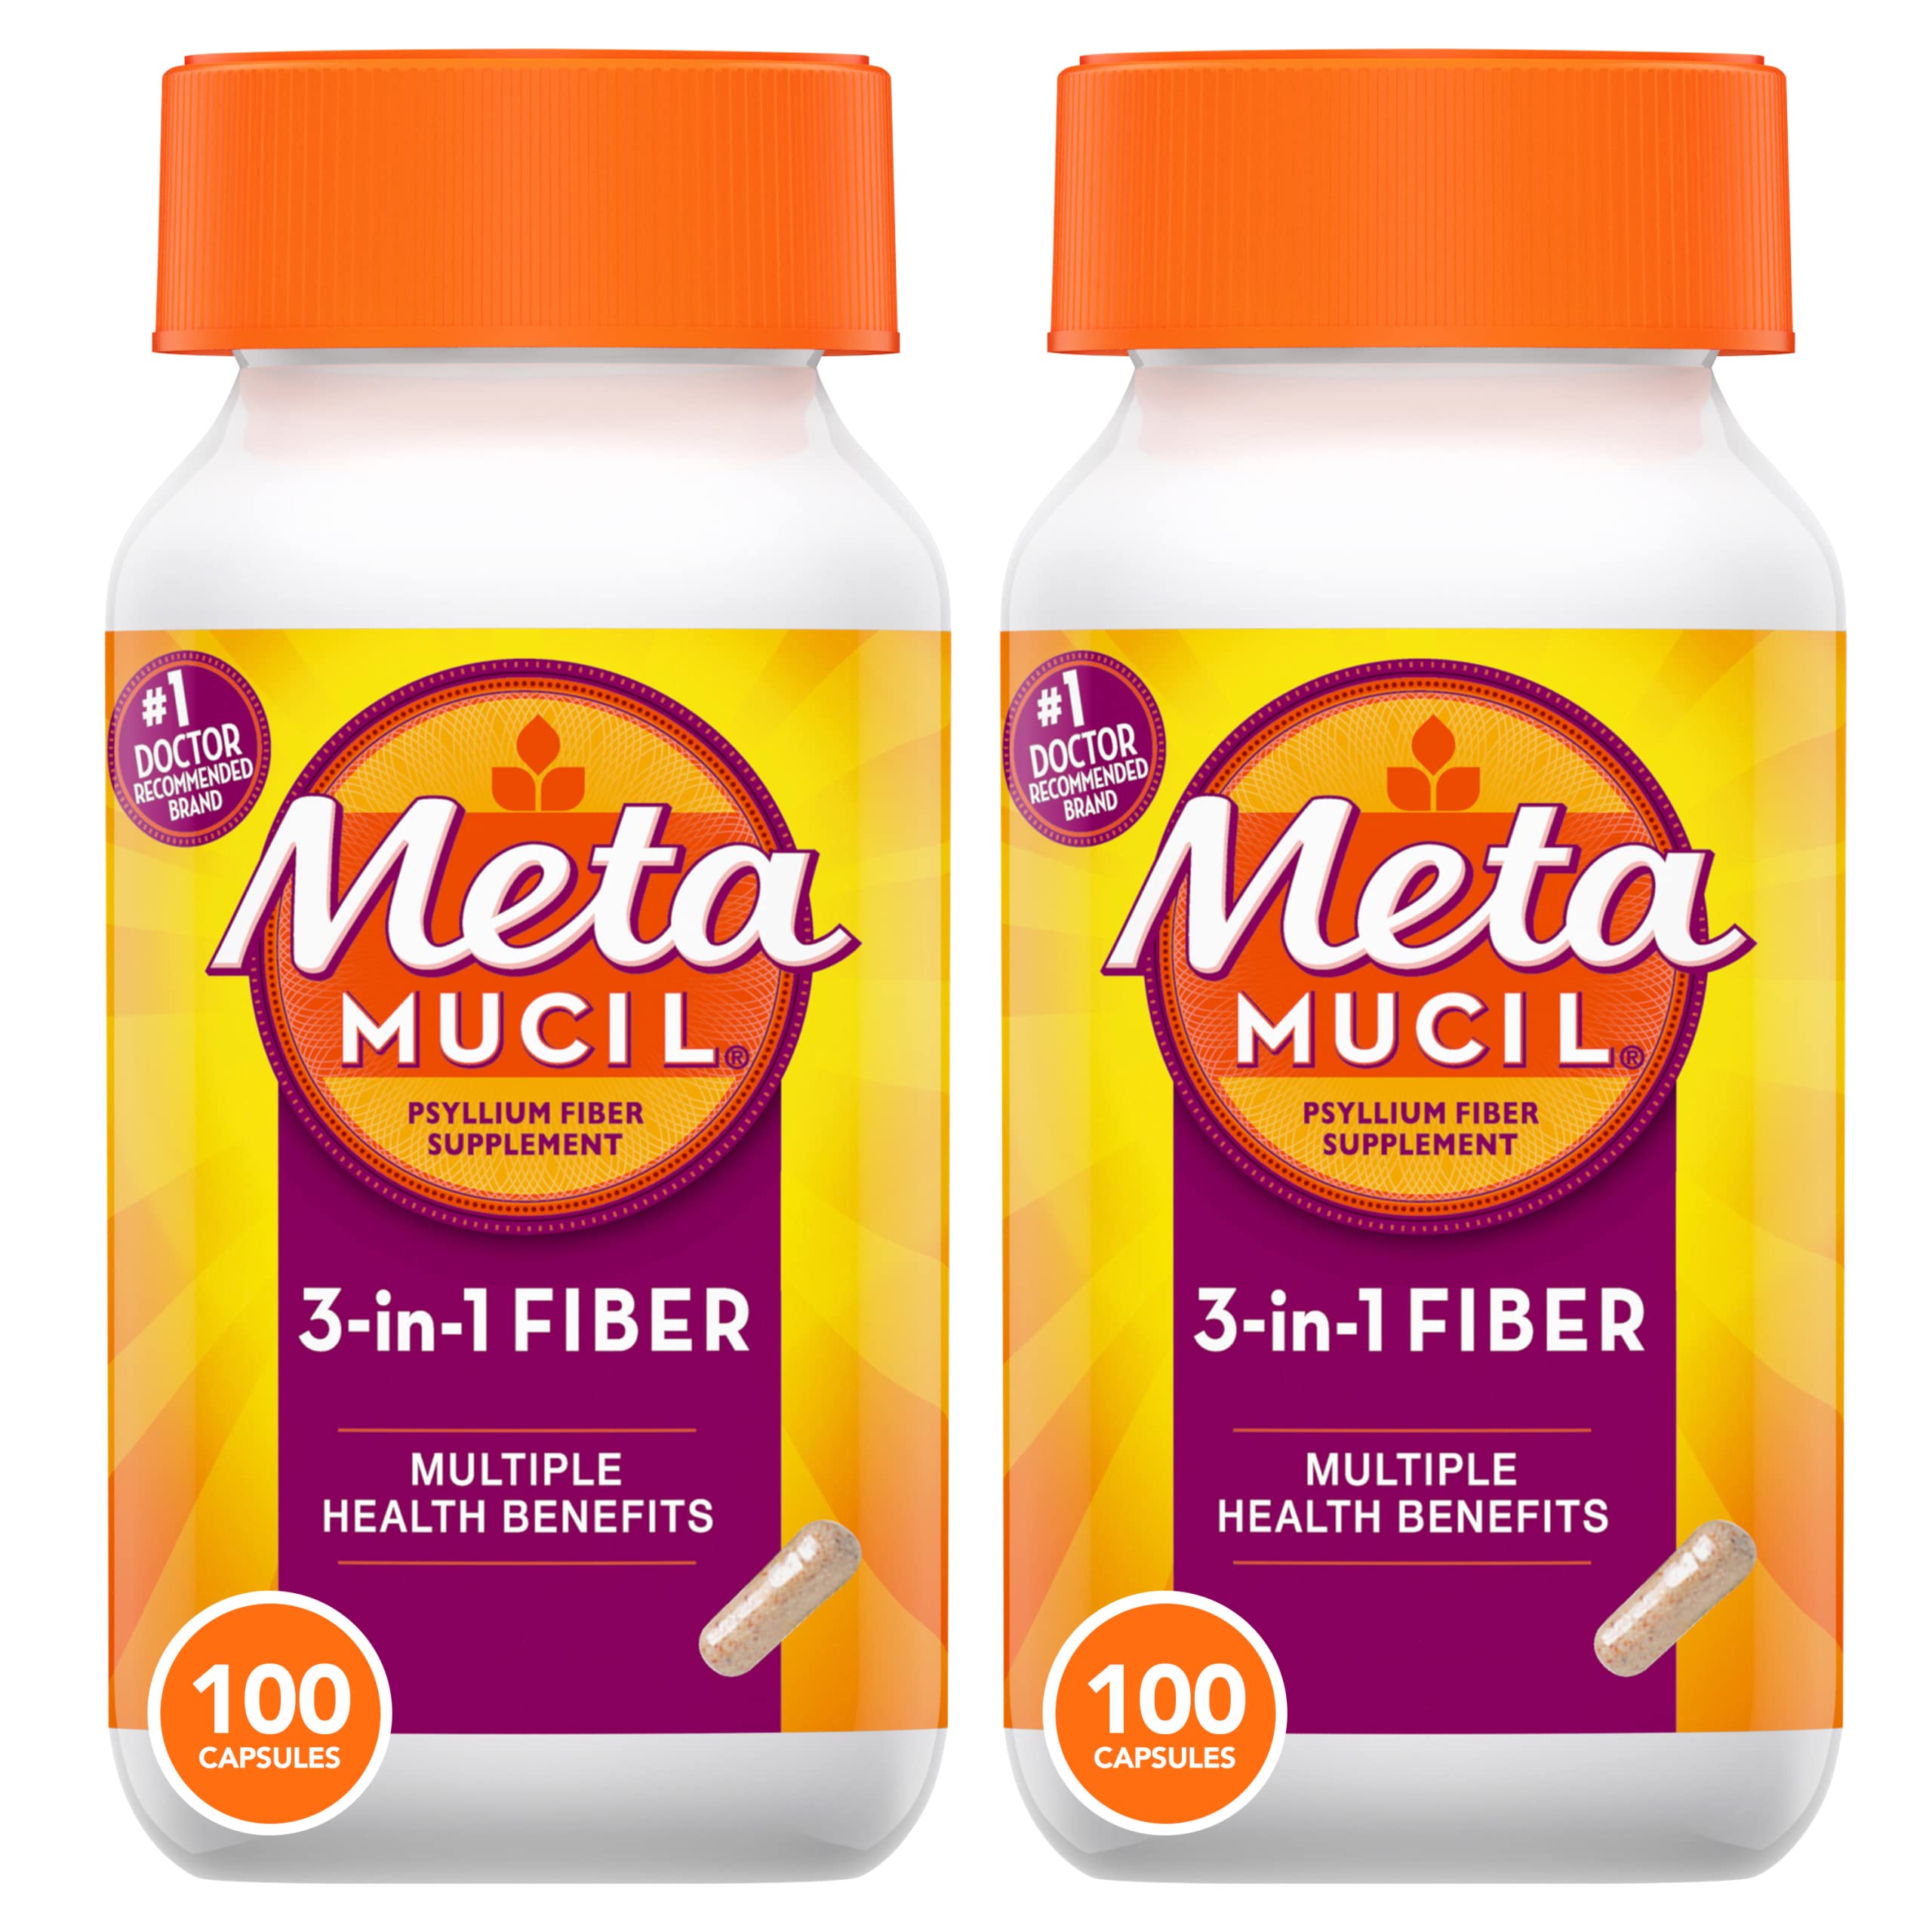 Metamucil, Psyllium Husk Fiber Supplement, 3-in-1 Fiber for Digestive Health, Plant Based Fiber, 100 Capsules (Pack of 2)